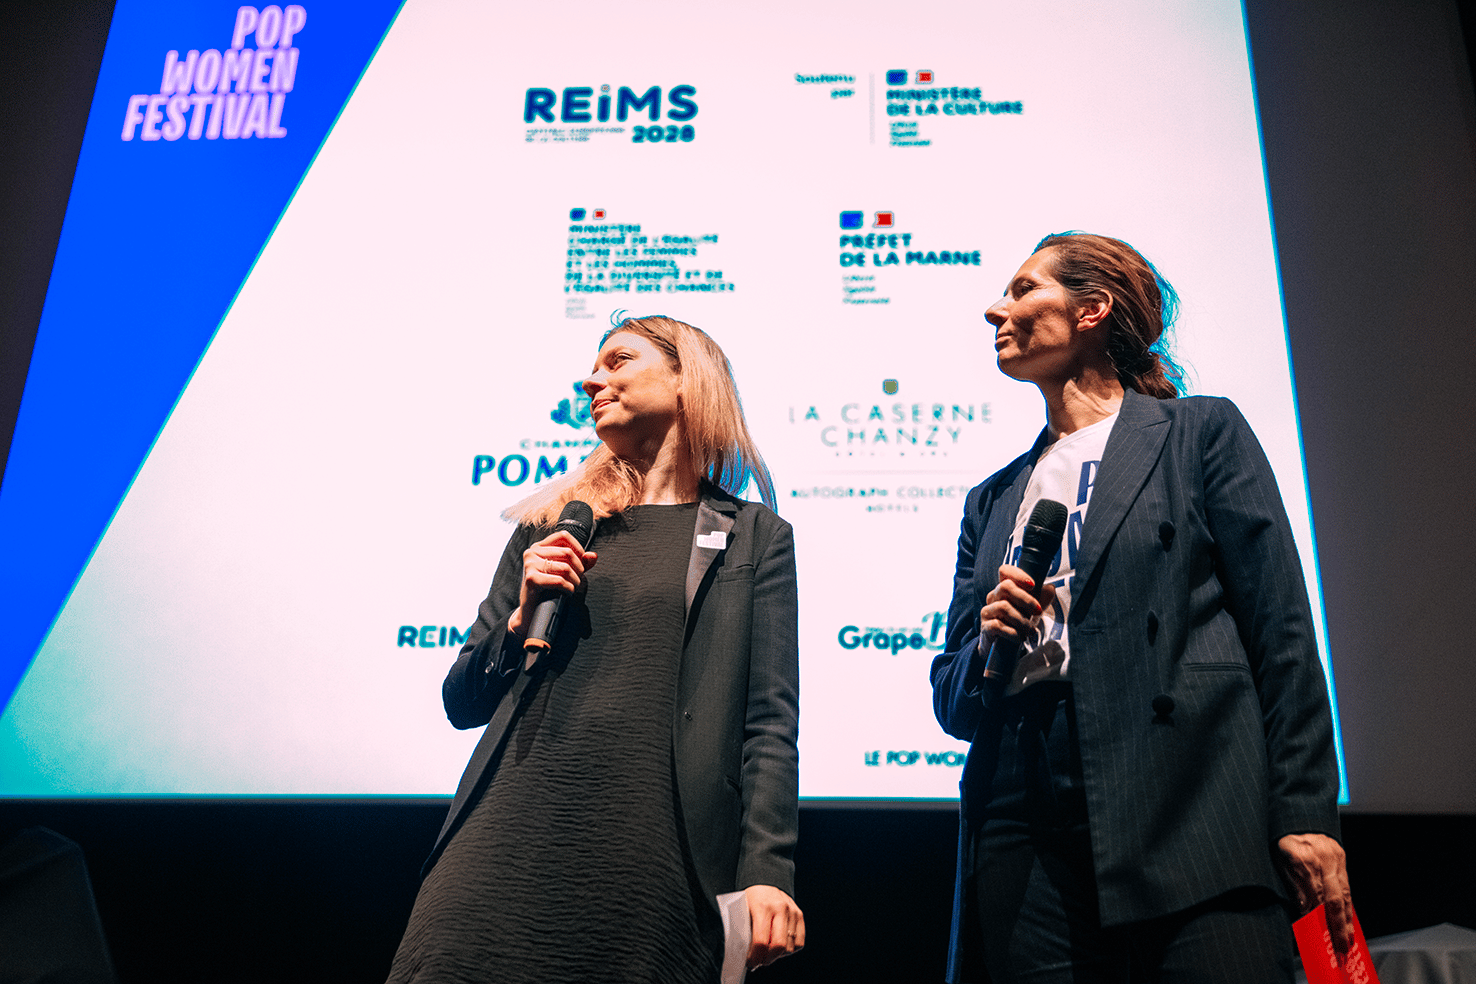 Portrait de Éléonore Assante di Panzillo vice-présidente de Reims 2028 et Céline Bagot la fondatrice du Pop Women Festival 2022 par Chloé Vollmer-Lo